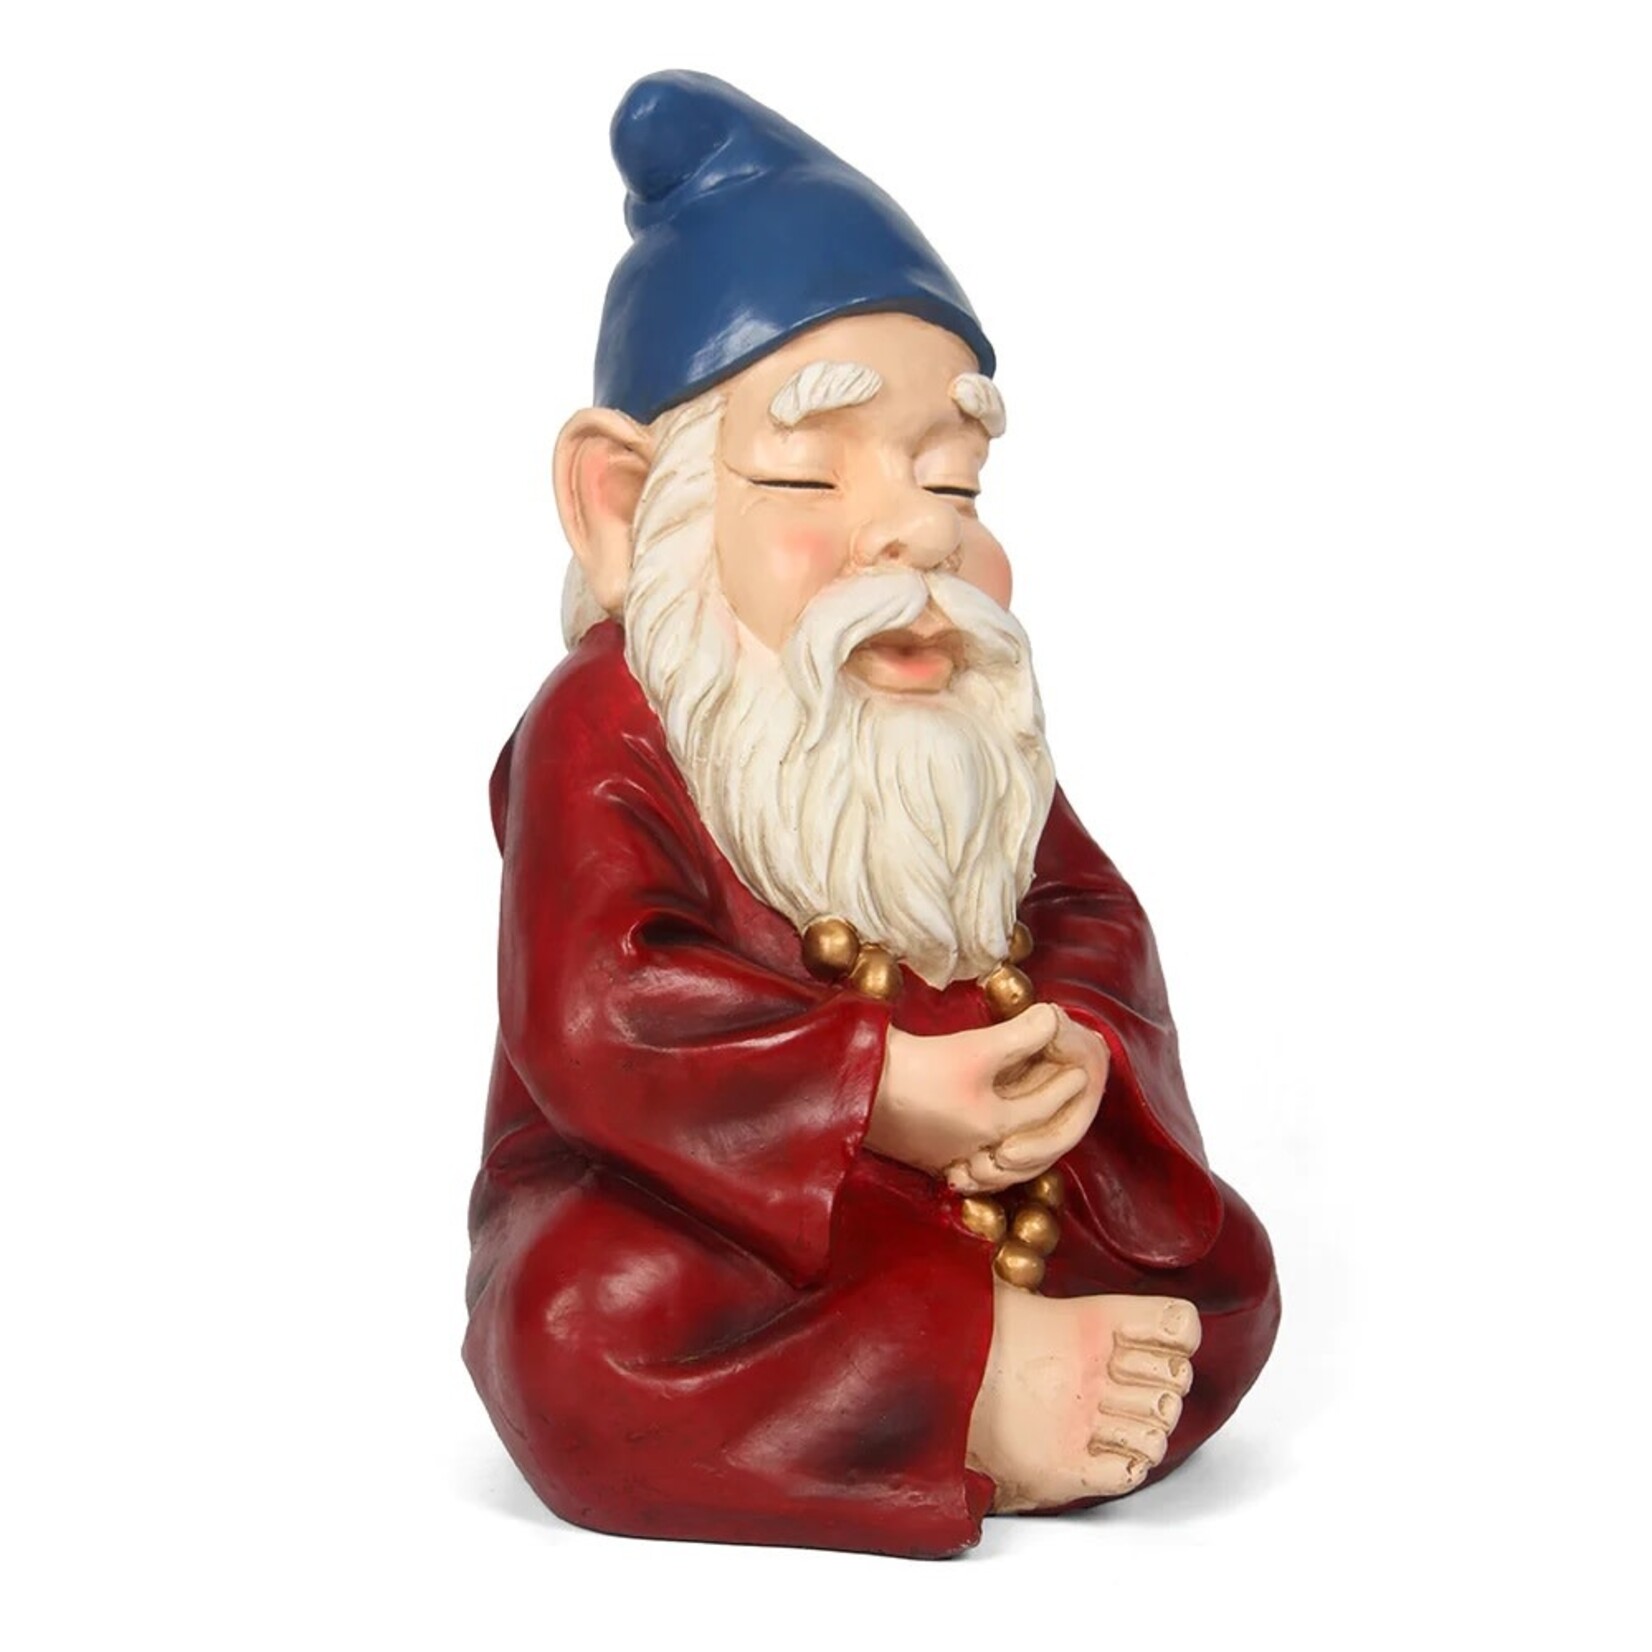 Gnome-Zen Gnome15 Inch